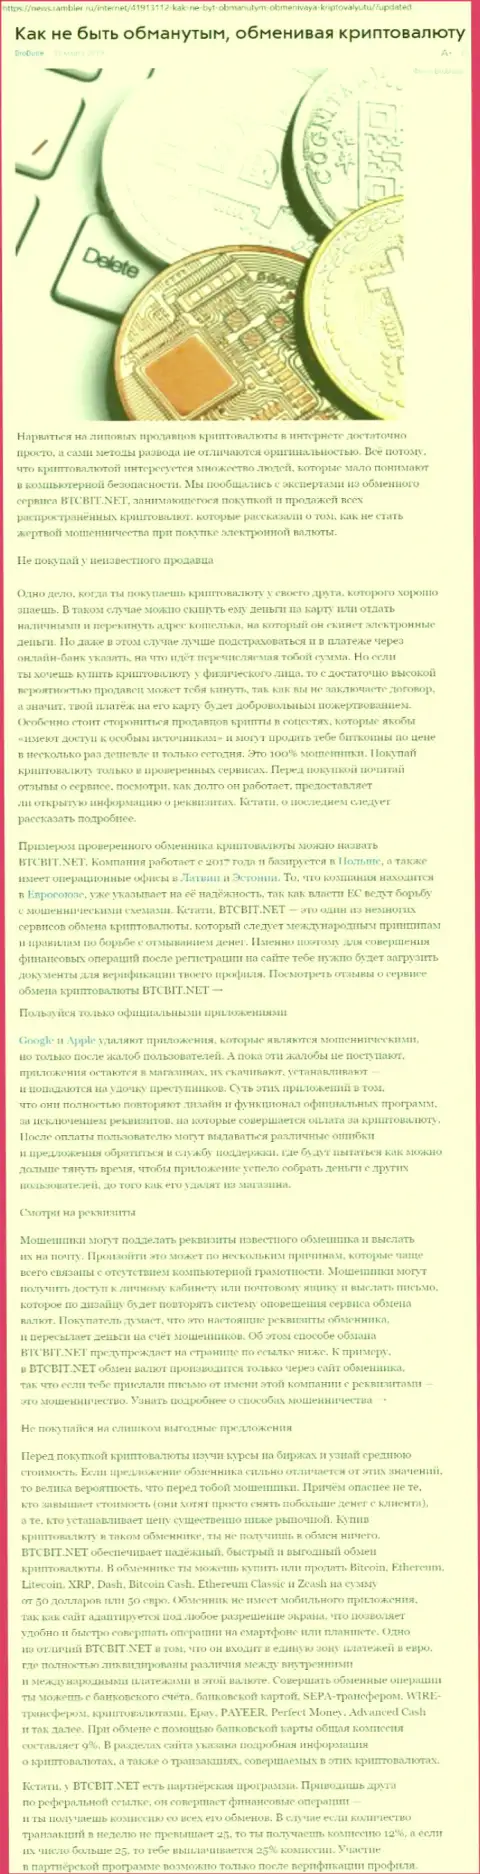 Статья о компании БТЦБИТ Сп. з.о.о. на news rambler ru